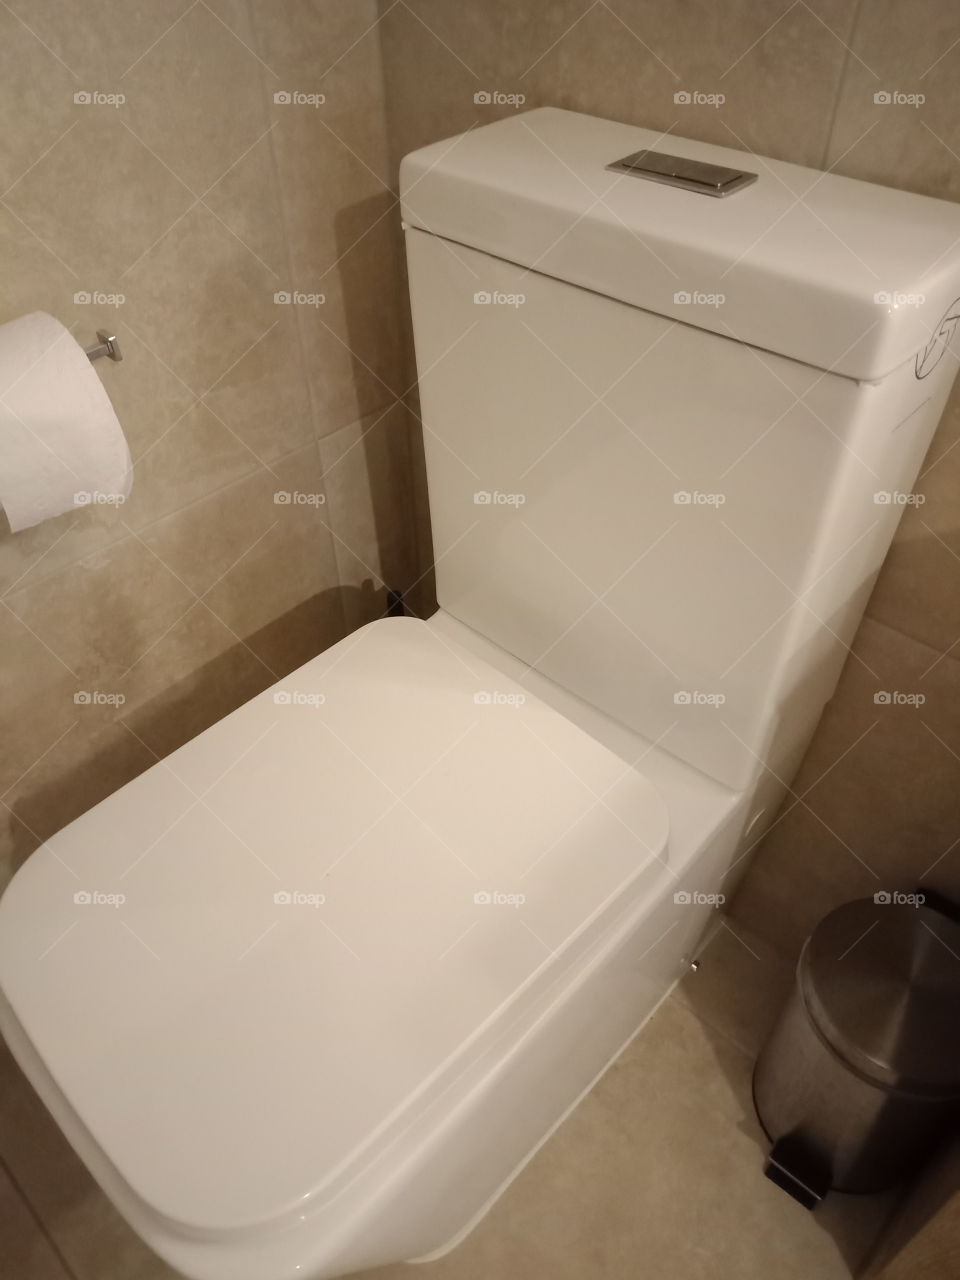 a modern toilet